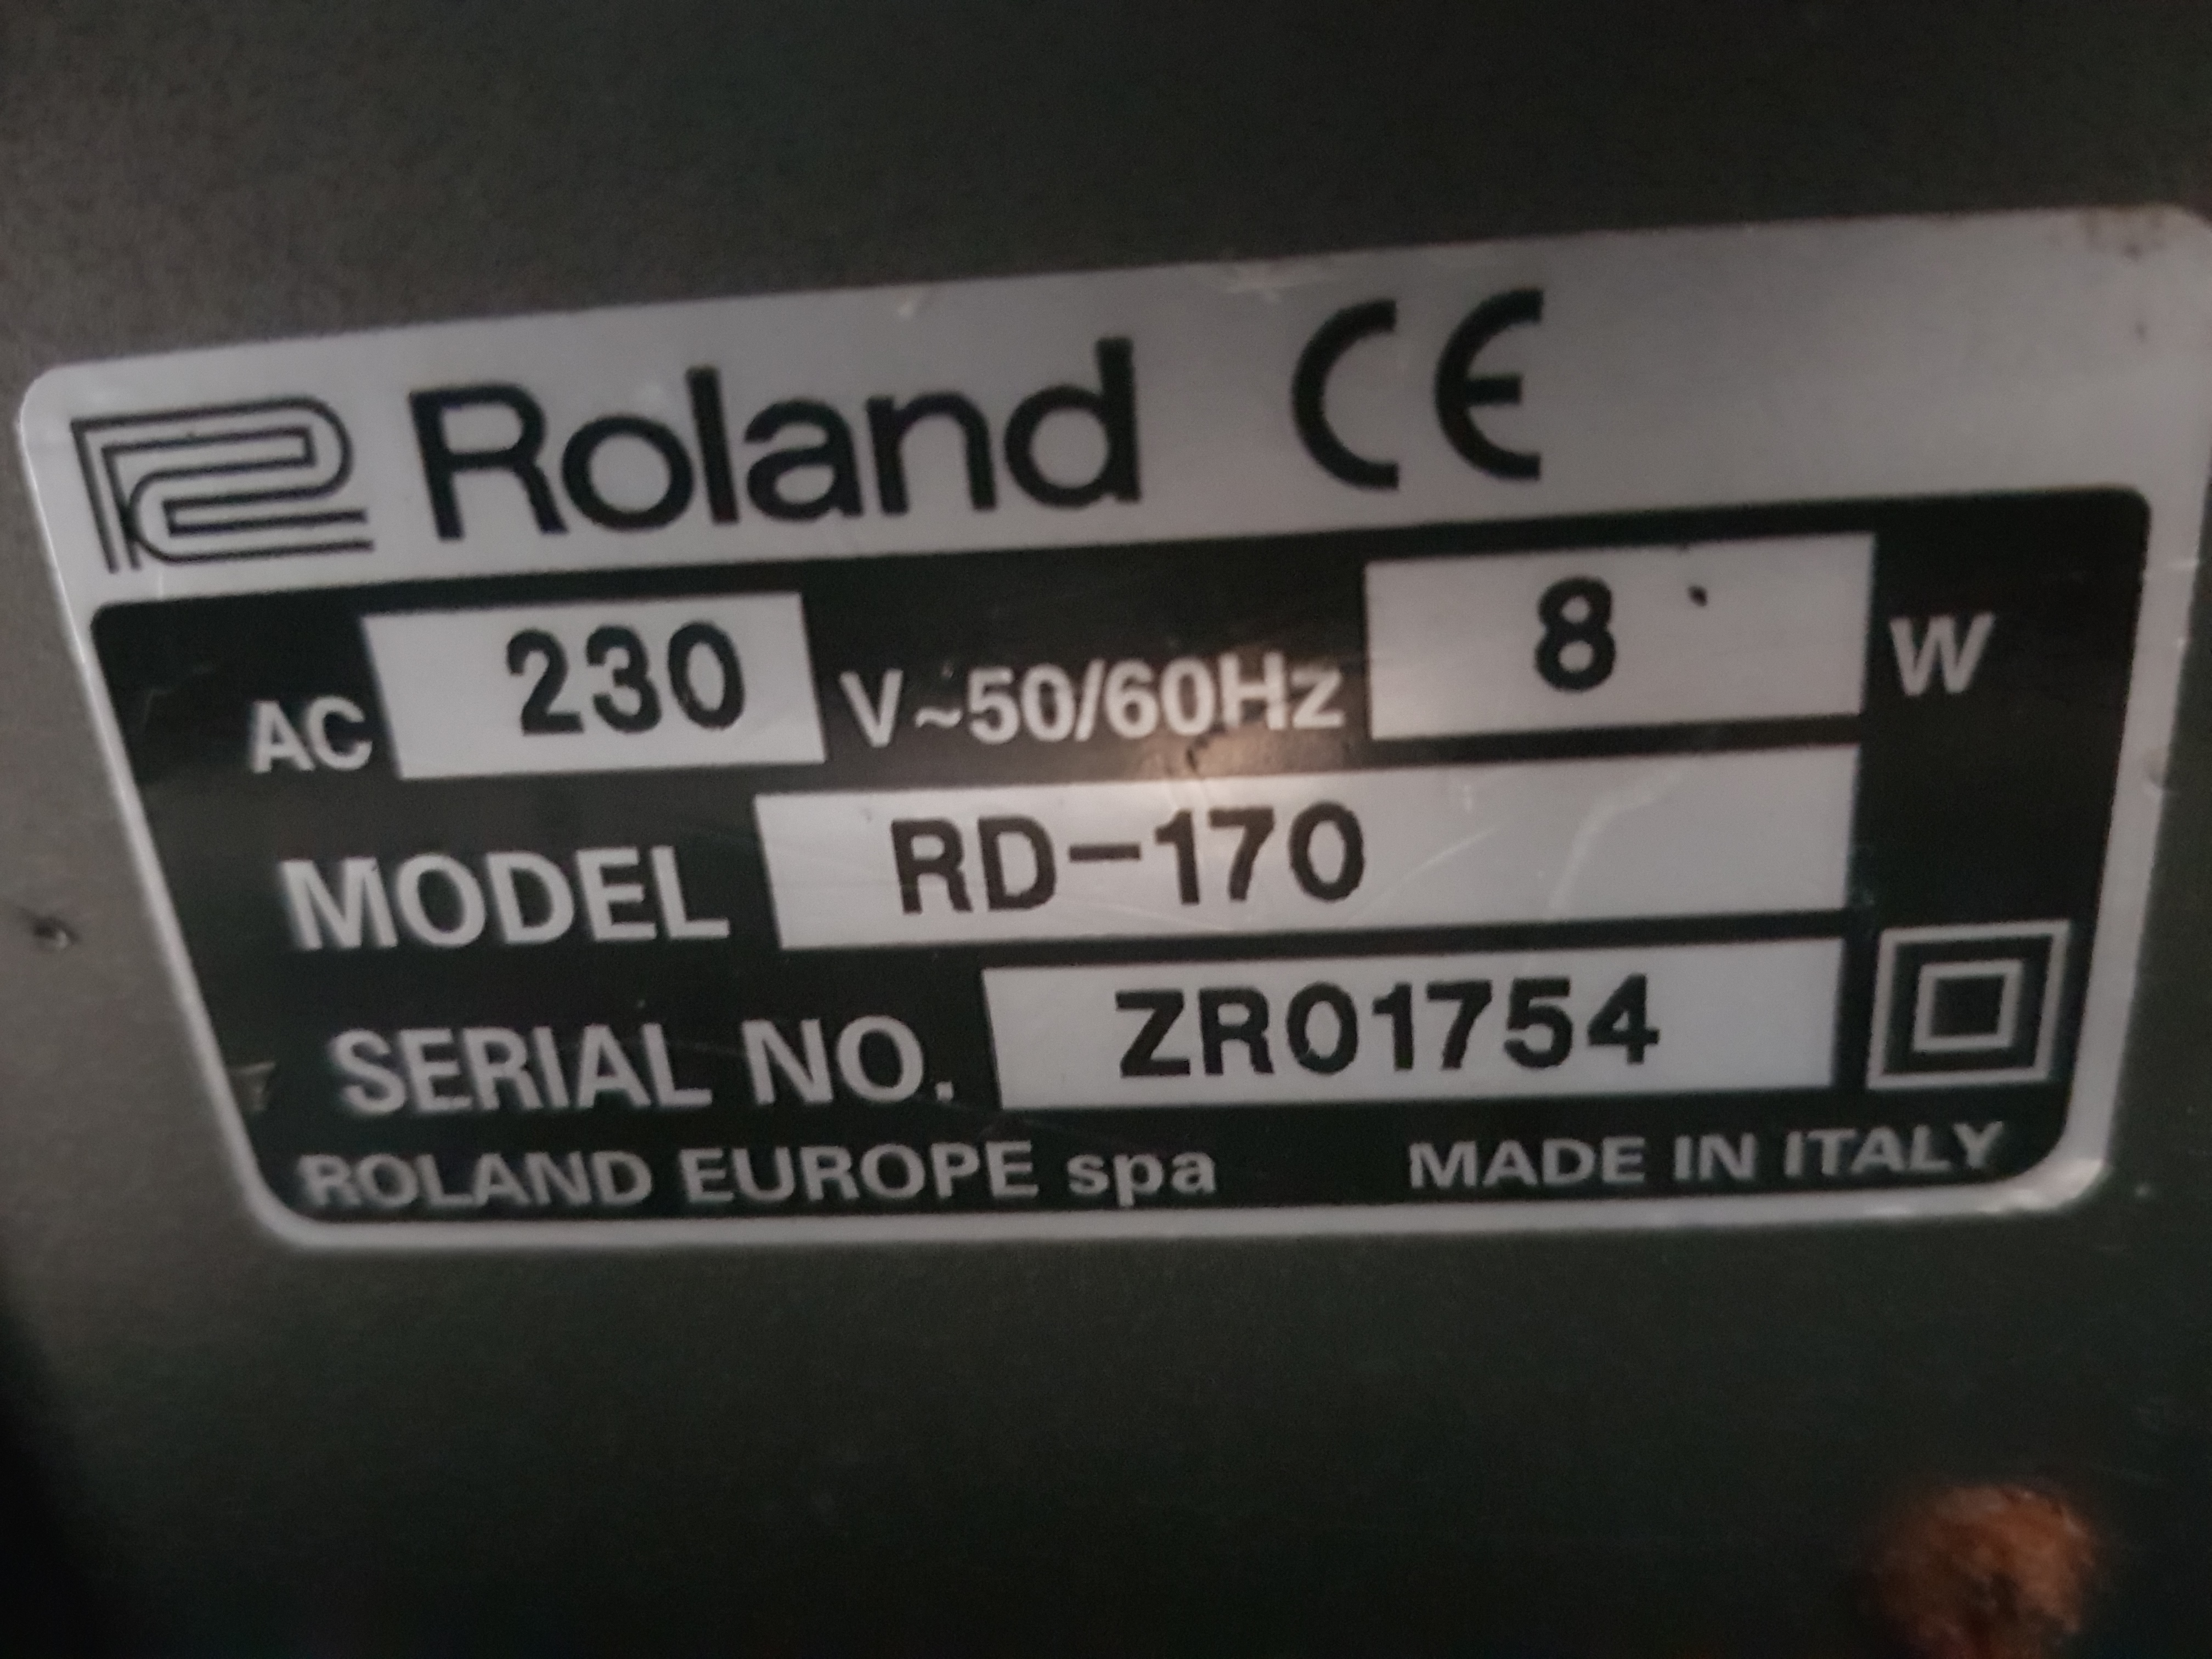 RD-170 - Roland RD-170 - Audiofanzine